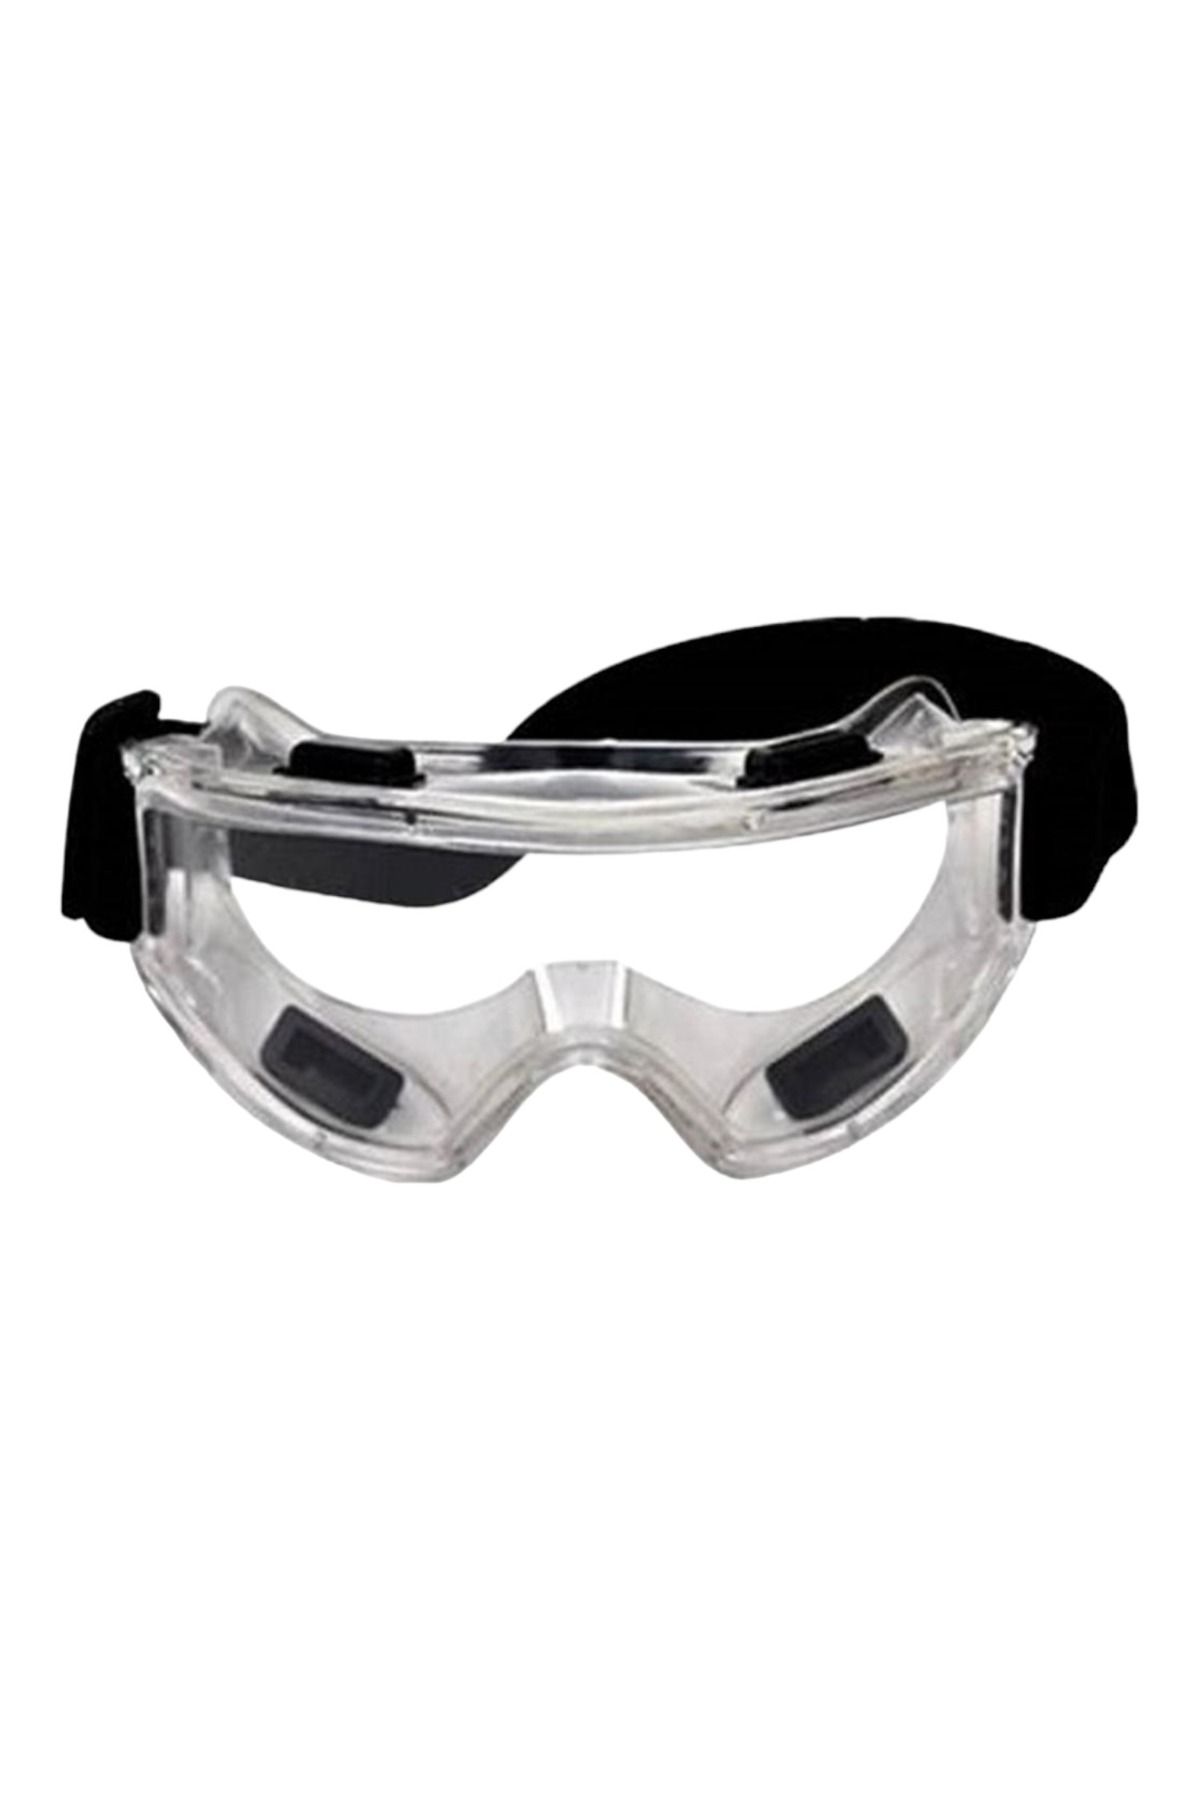 Baymax S-550 Grand Google İş Gözlüğü